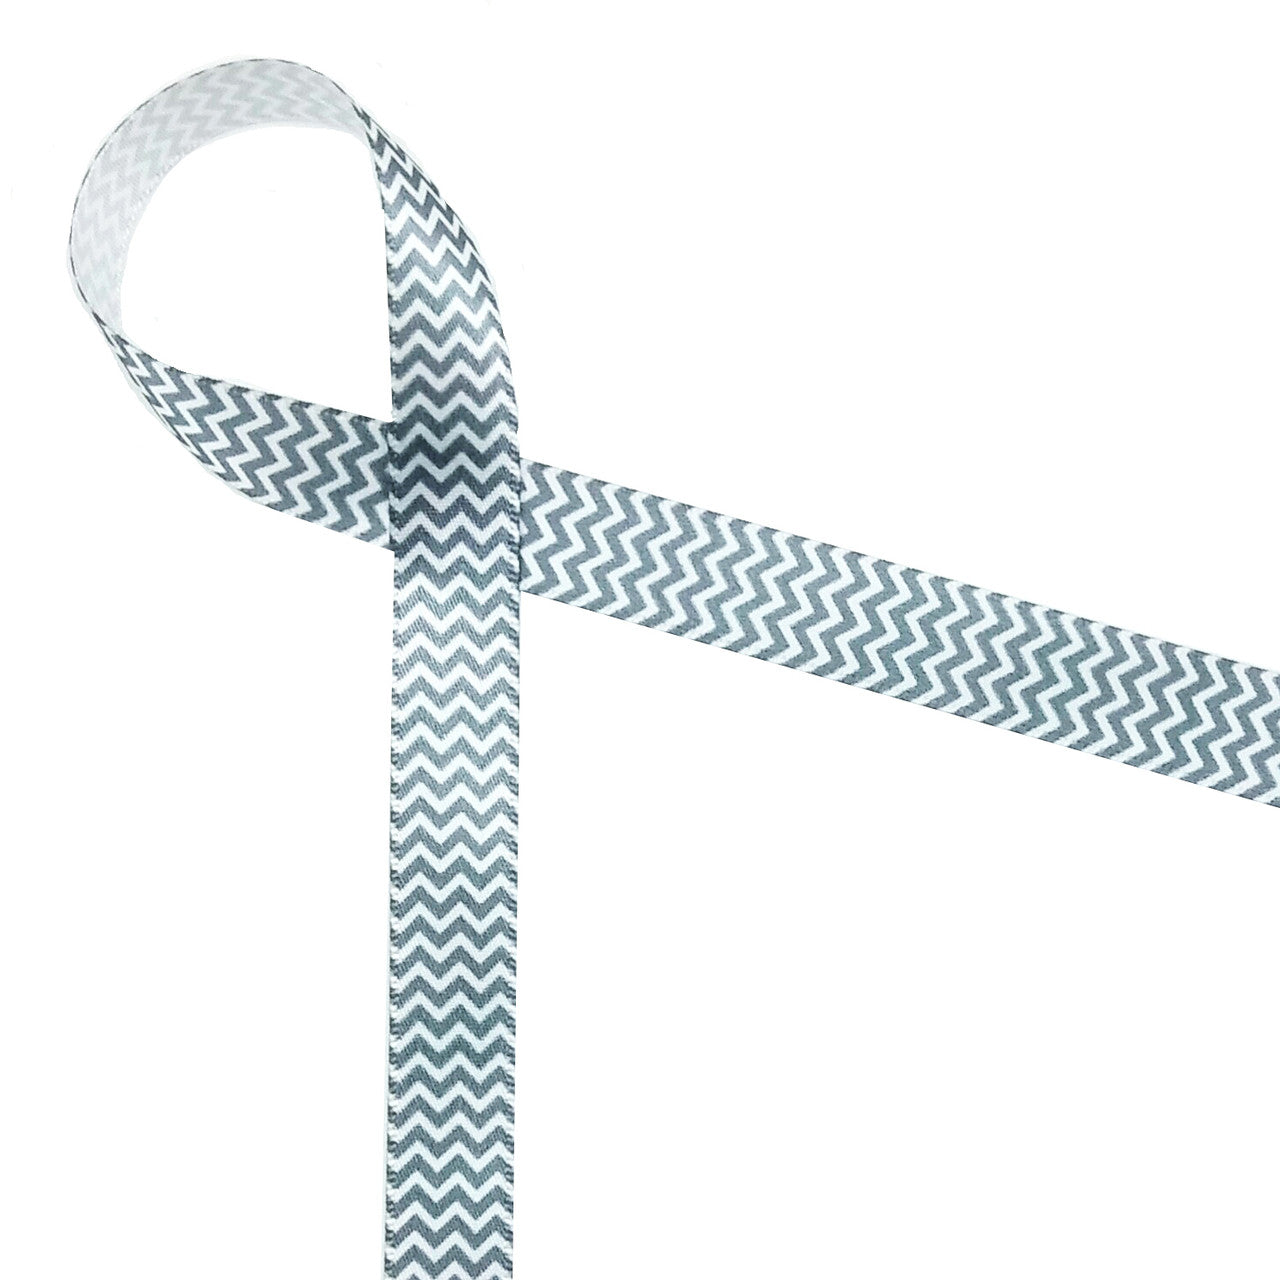 Micro Mini Chevron Ribbon in Gray and White on 5/8" White Single Face Satin